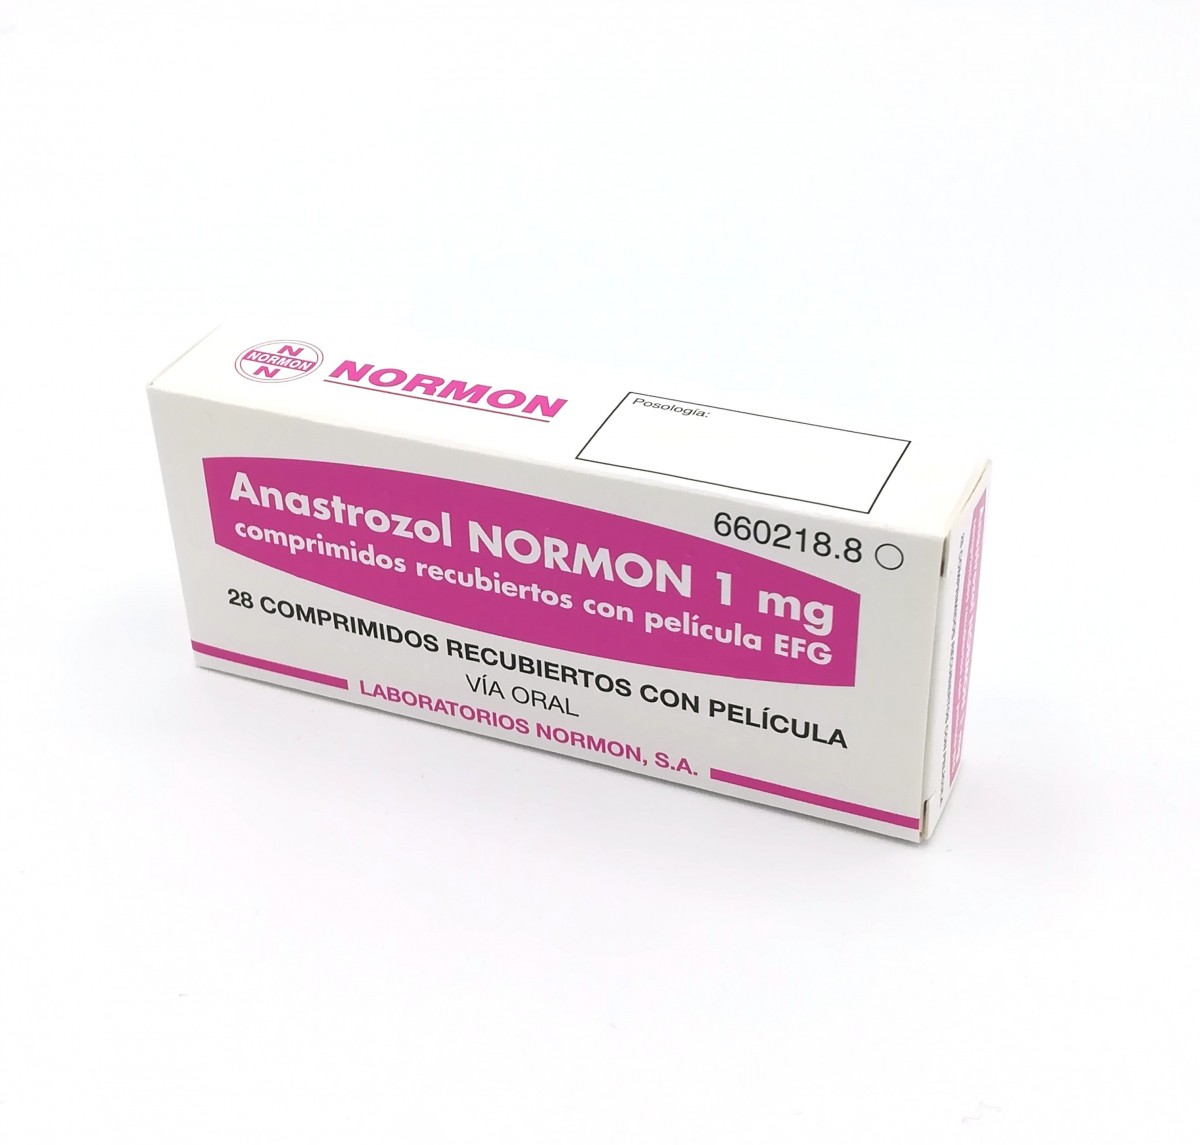 ANASTROZOL NORMON 1 mg COMPRIMIDOS RECUBIERTOS CON PELICULA EFG, 28 comprimidos fotografía del envase.